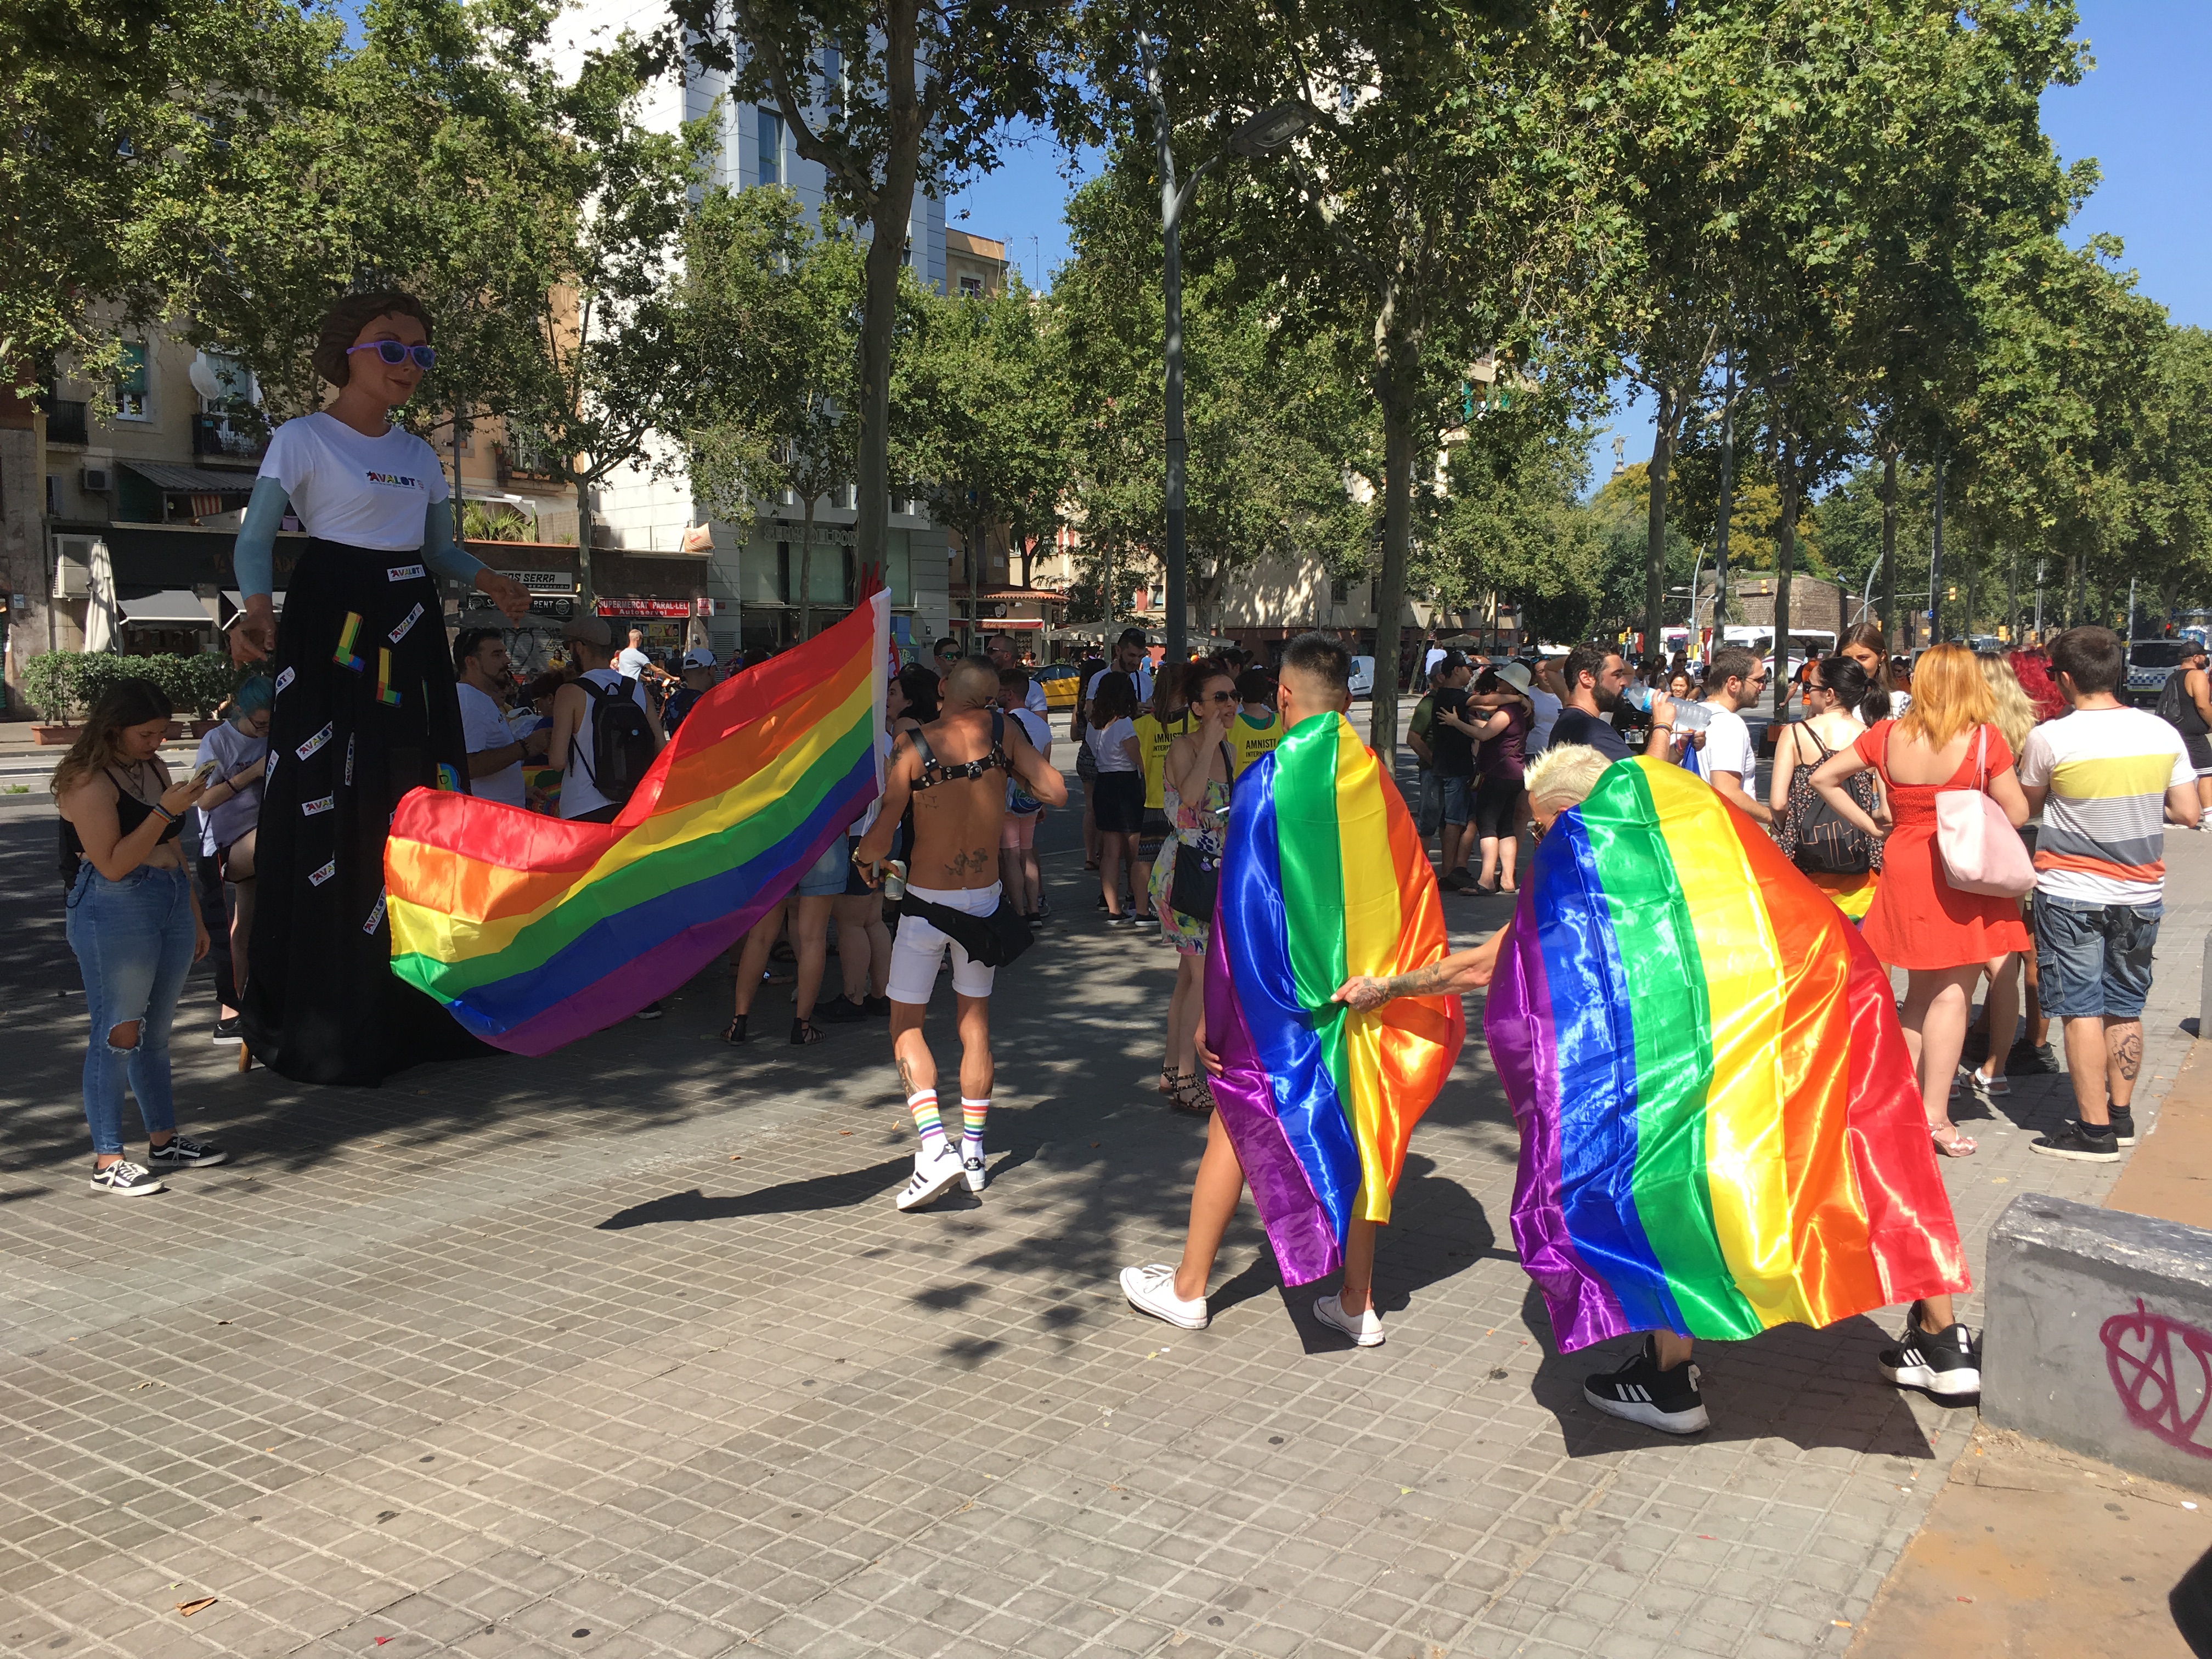 Barcelona Pride preparations in the sun. (Photo: Cillian Shields)